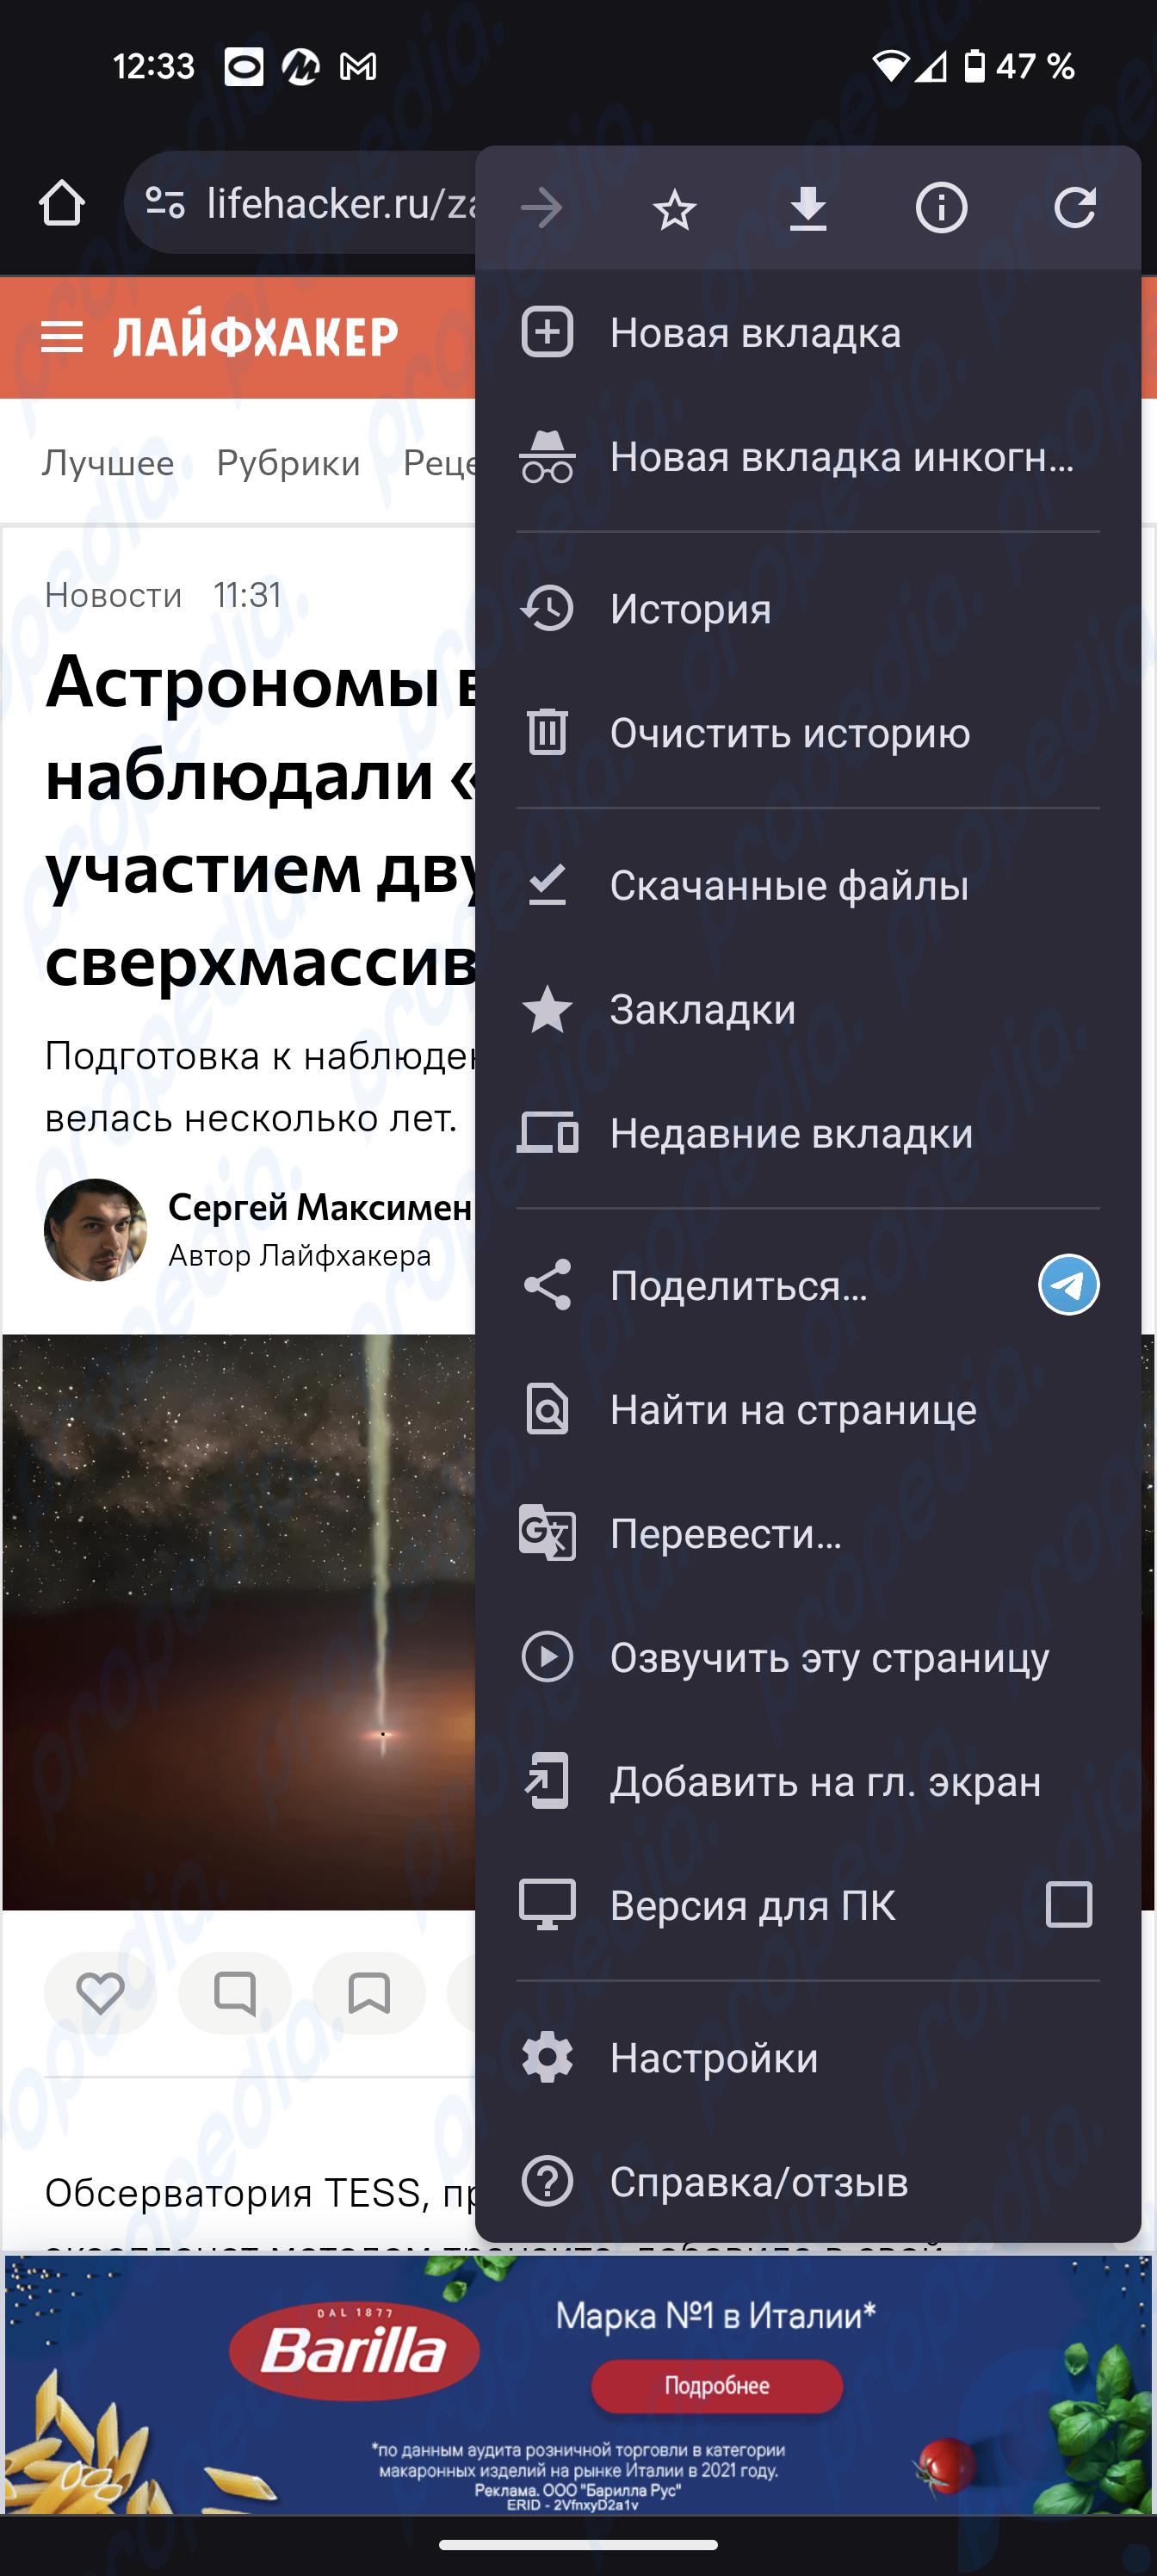 Der Chrome-Browser auf Android hat gelernt, den Inhalt von Webseiten auf Russisch zu lesen